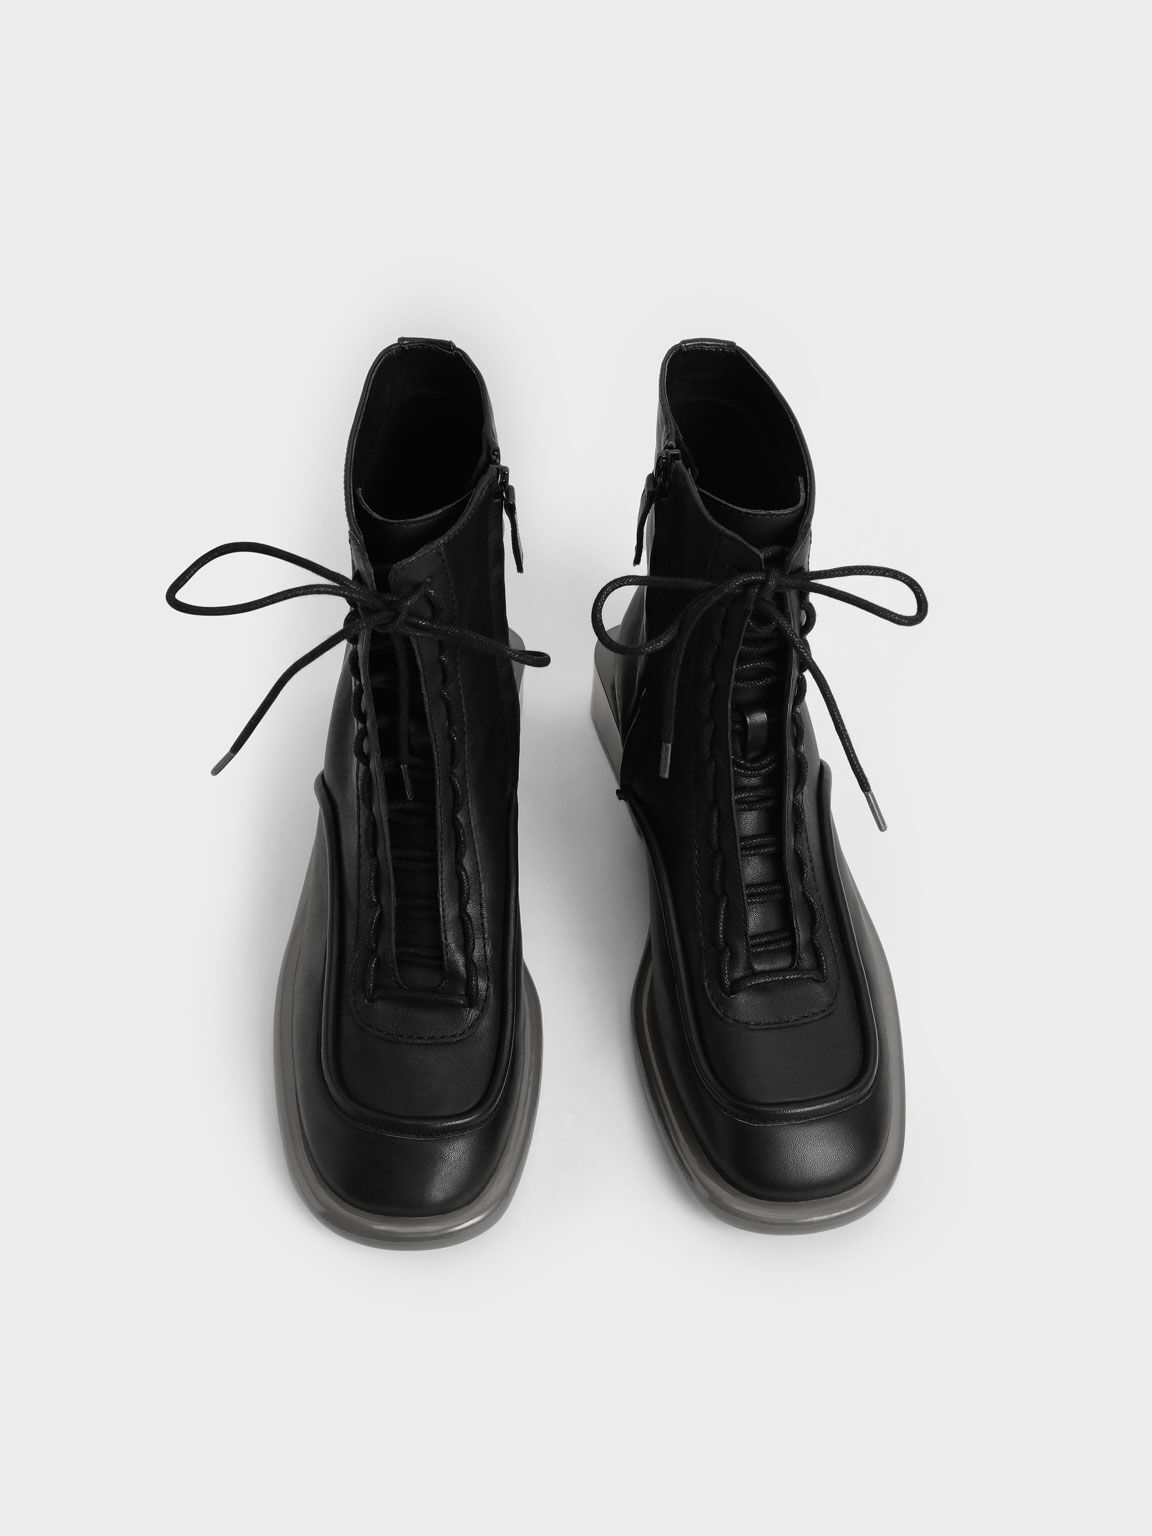 Fleur Leather Lace-Up Boots, Black, hi-res